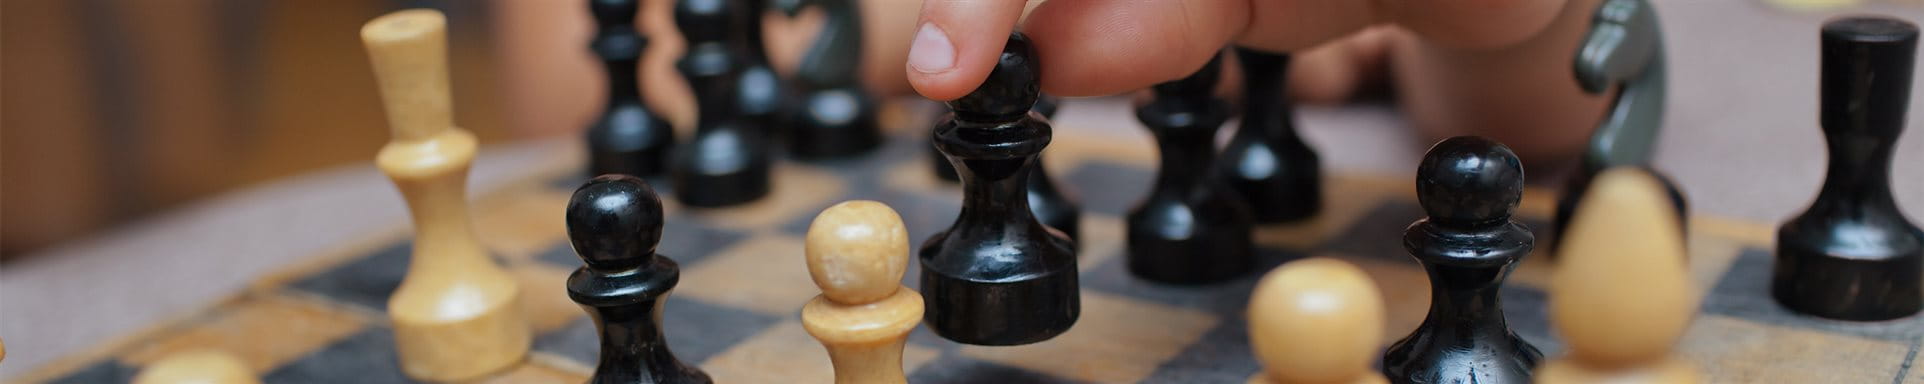 Decisione nel gioco degli scacchi 3a/3b